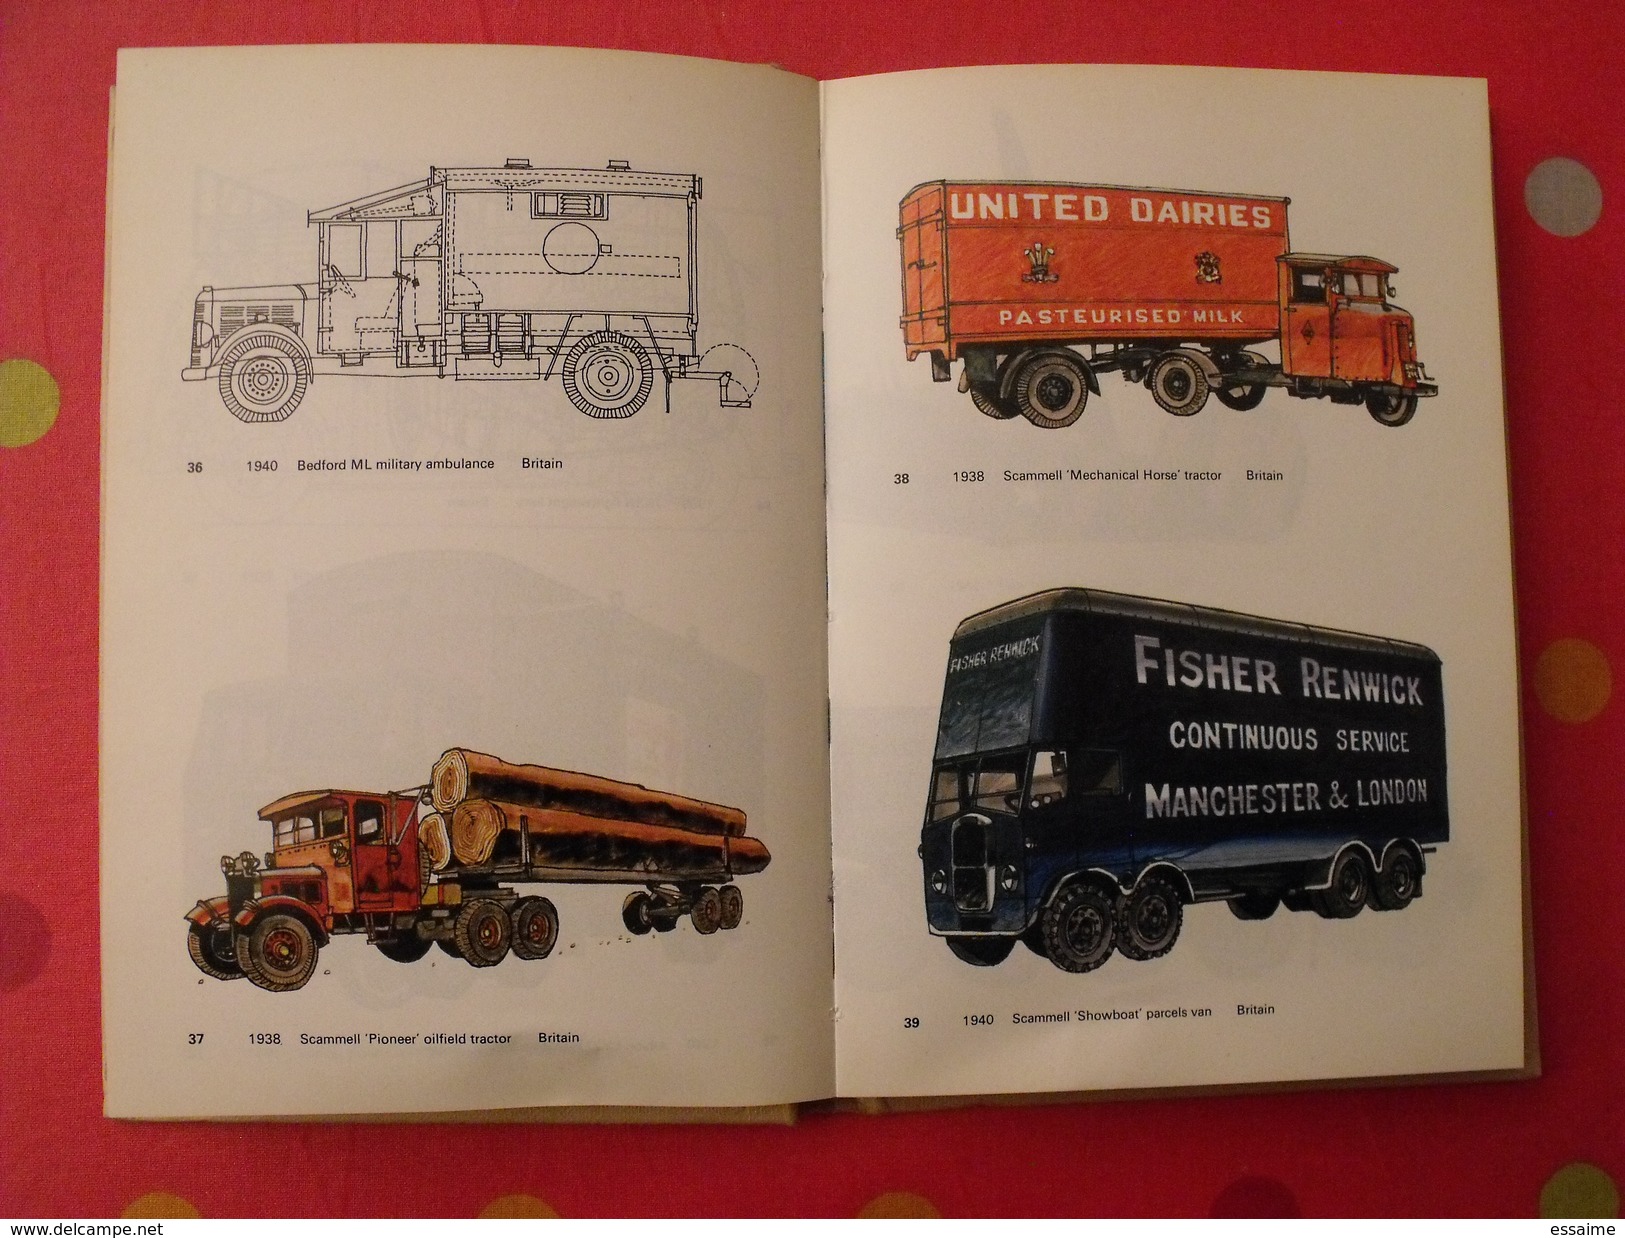 lorries trucks and vans since 1928. camions depuis 1928. Ingram bishop. 1975. en anglais. blandford